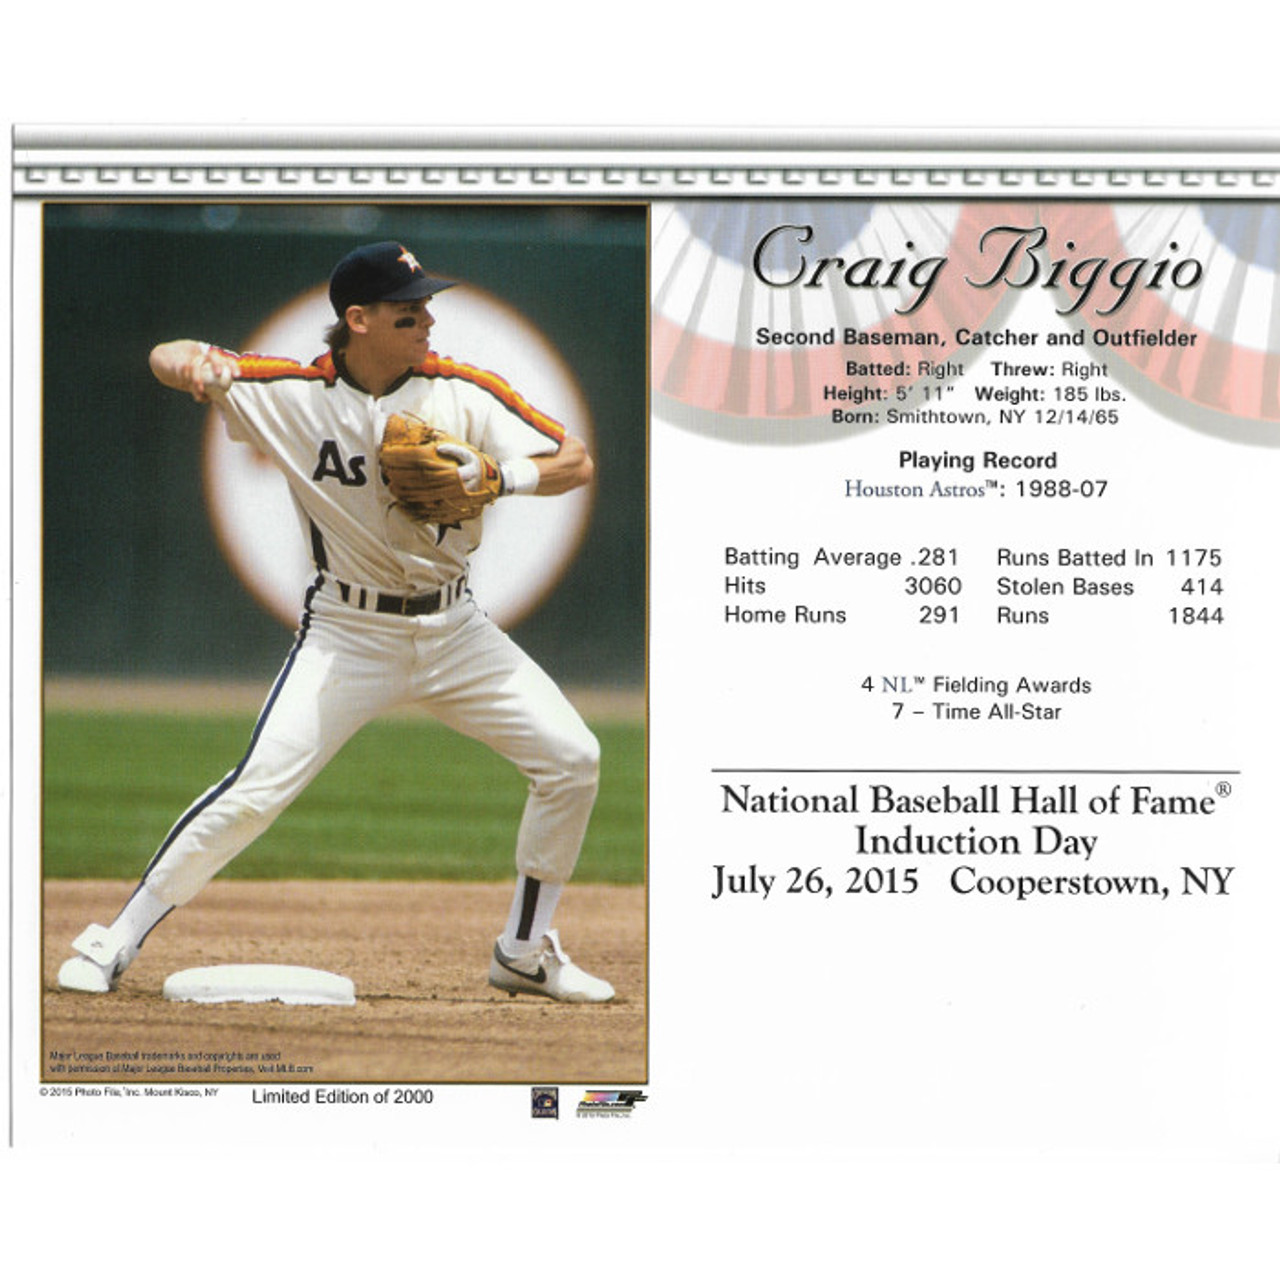 2014 Hall of Fame profile: Craig Biggio 